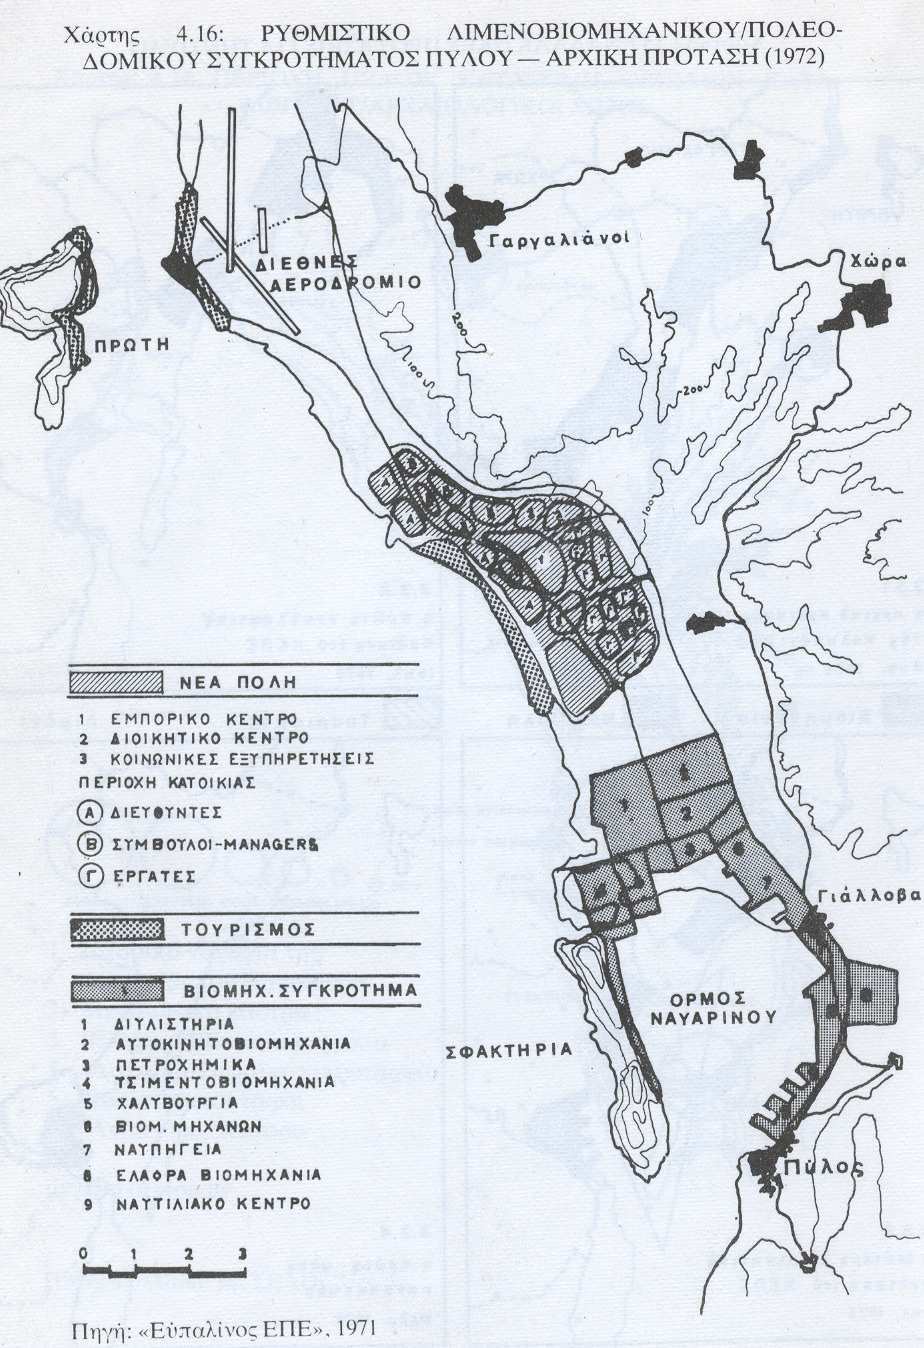 Χάρτης 6: Ρυθµιστικό Λιµενοβιοµηχανικού/πολεοδοµικού συγκροτήµατος Πύλου Αρχική πρόταση 1972. Πηγή: Χατζηµιχάλης και Βαΐου, 1979, σελ.